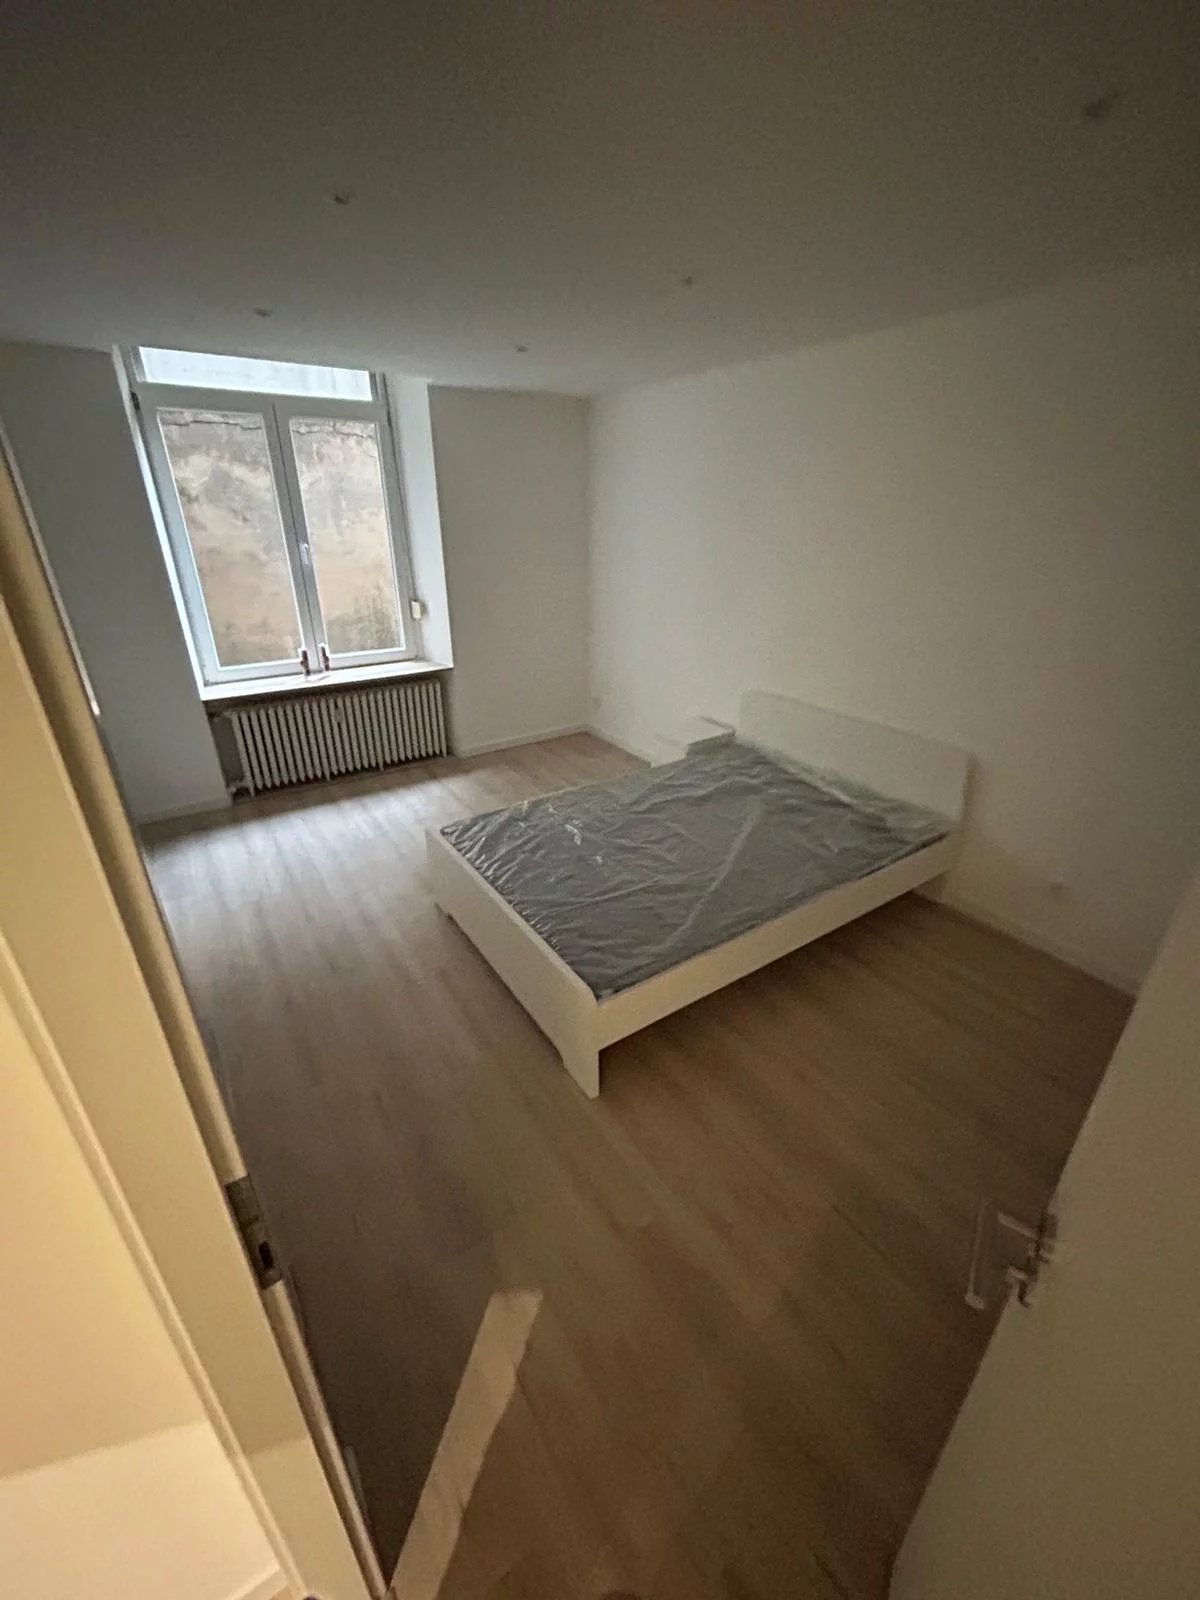 Rental Bedroom - Differdange - Luxembourg